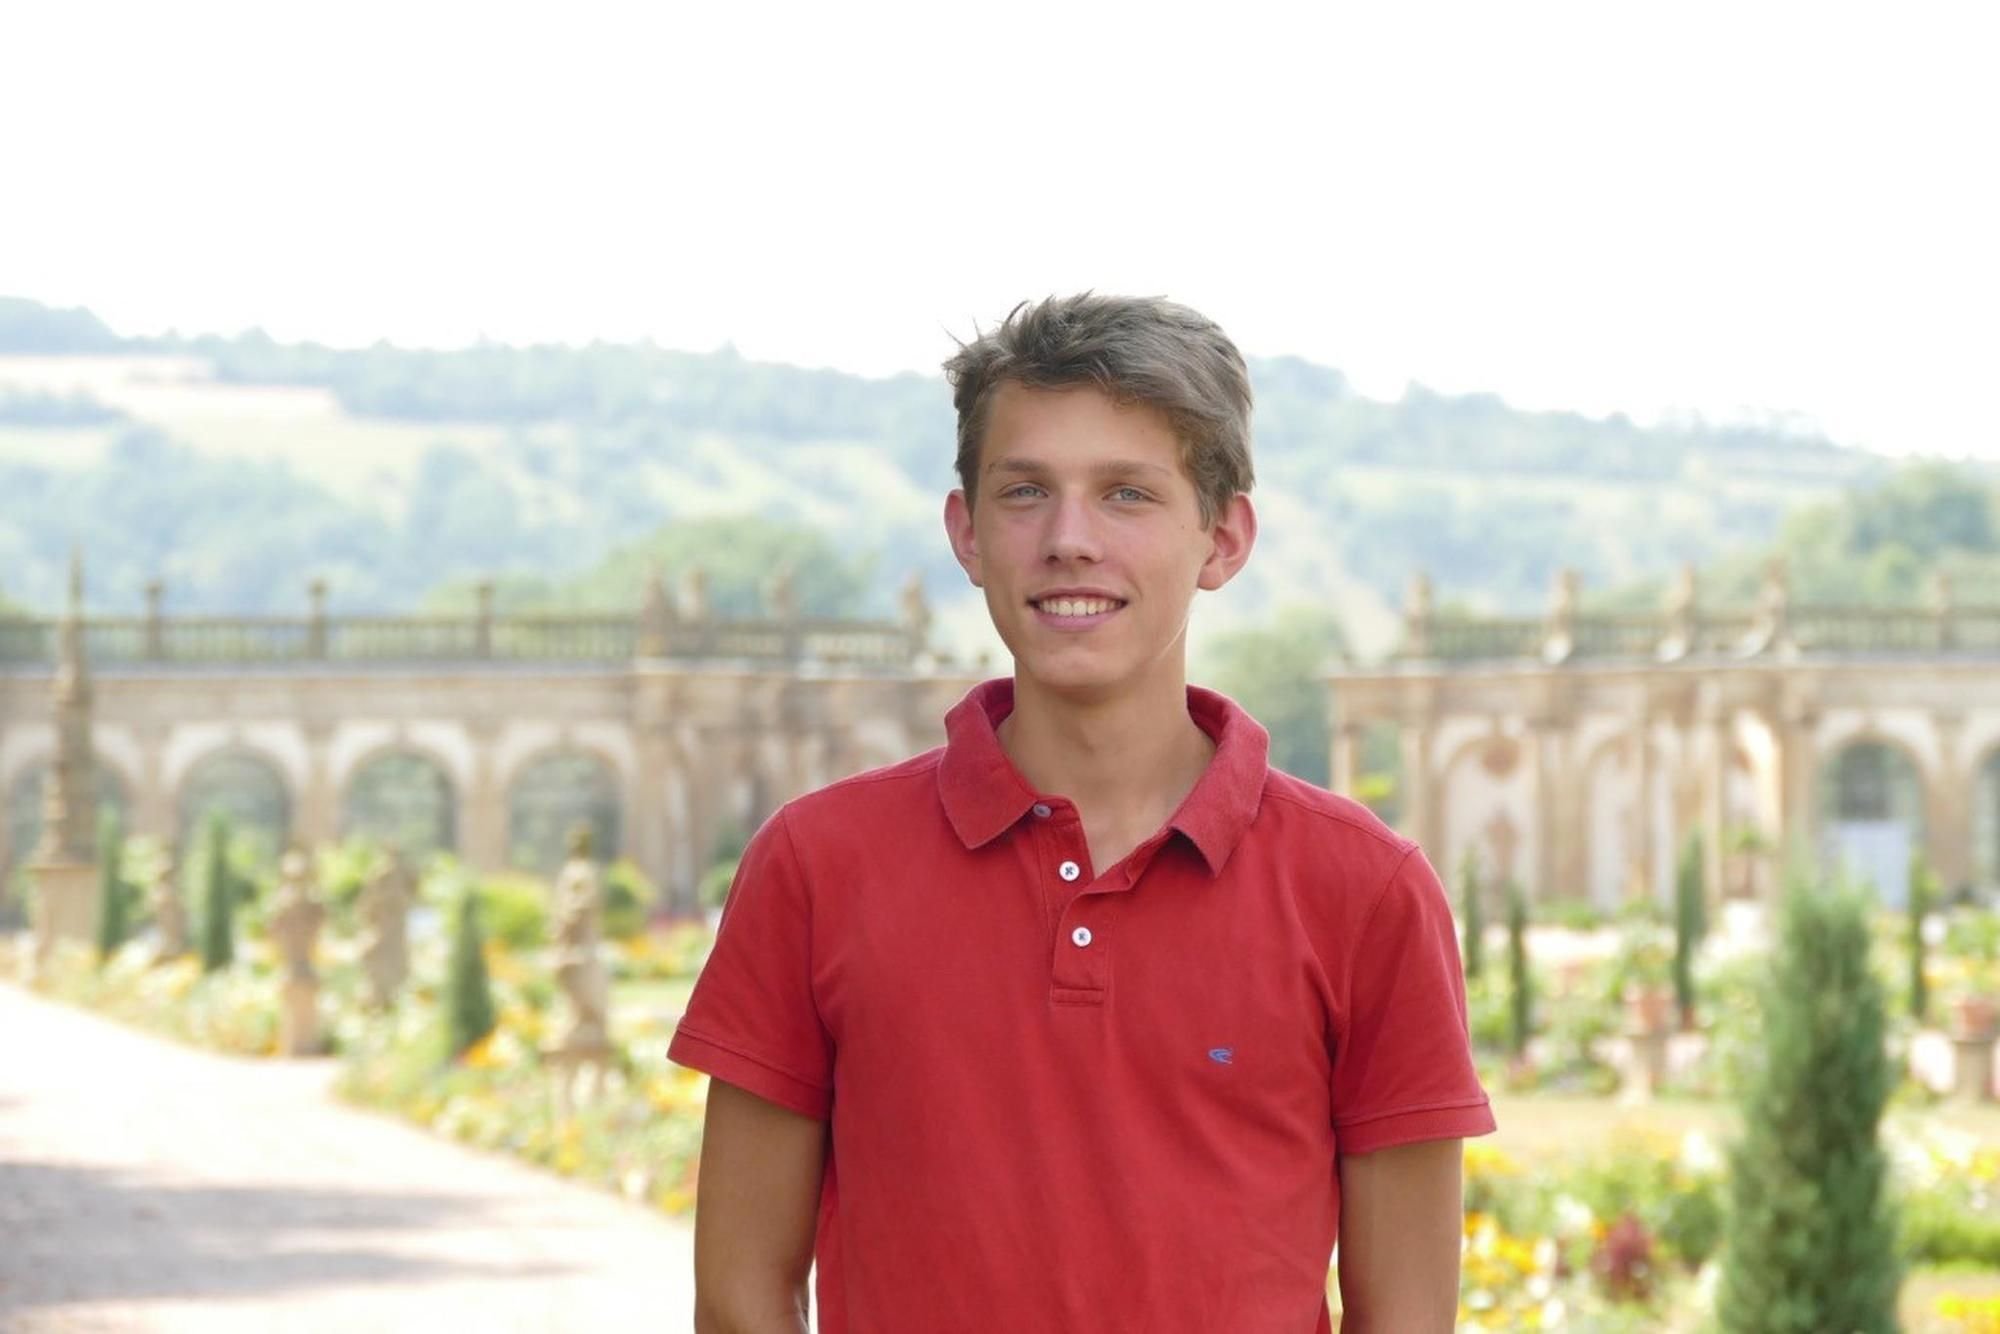 Jugend komponiert: Julius von Lorentz ist der jüngste Preisträger